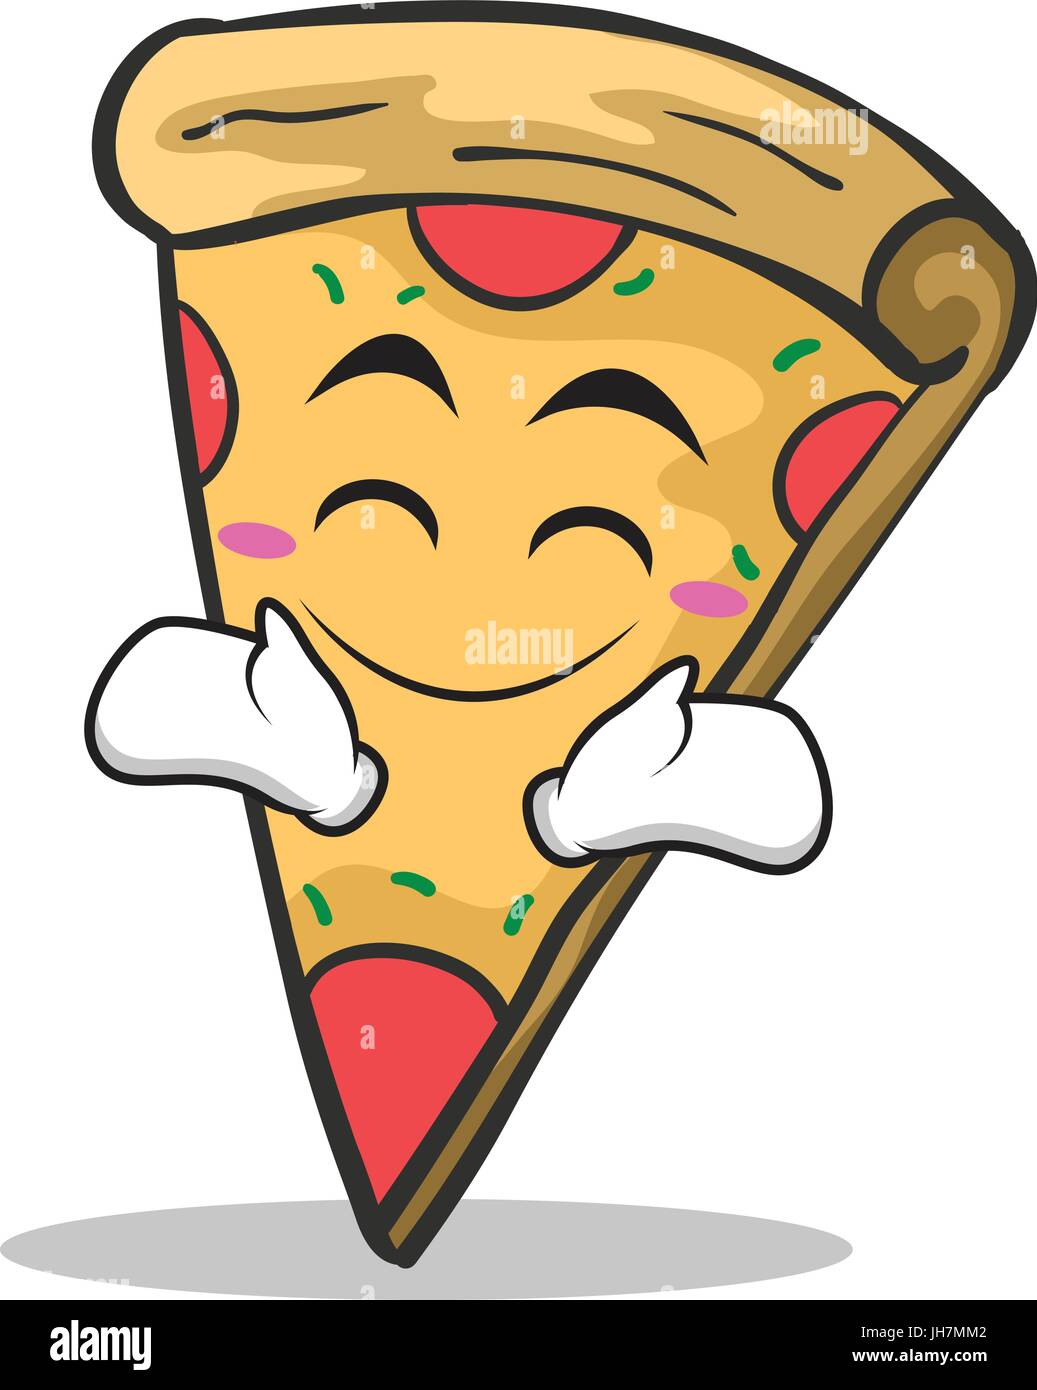 Happy face pizza character cartoon Stock Vector